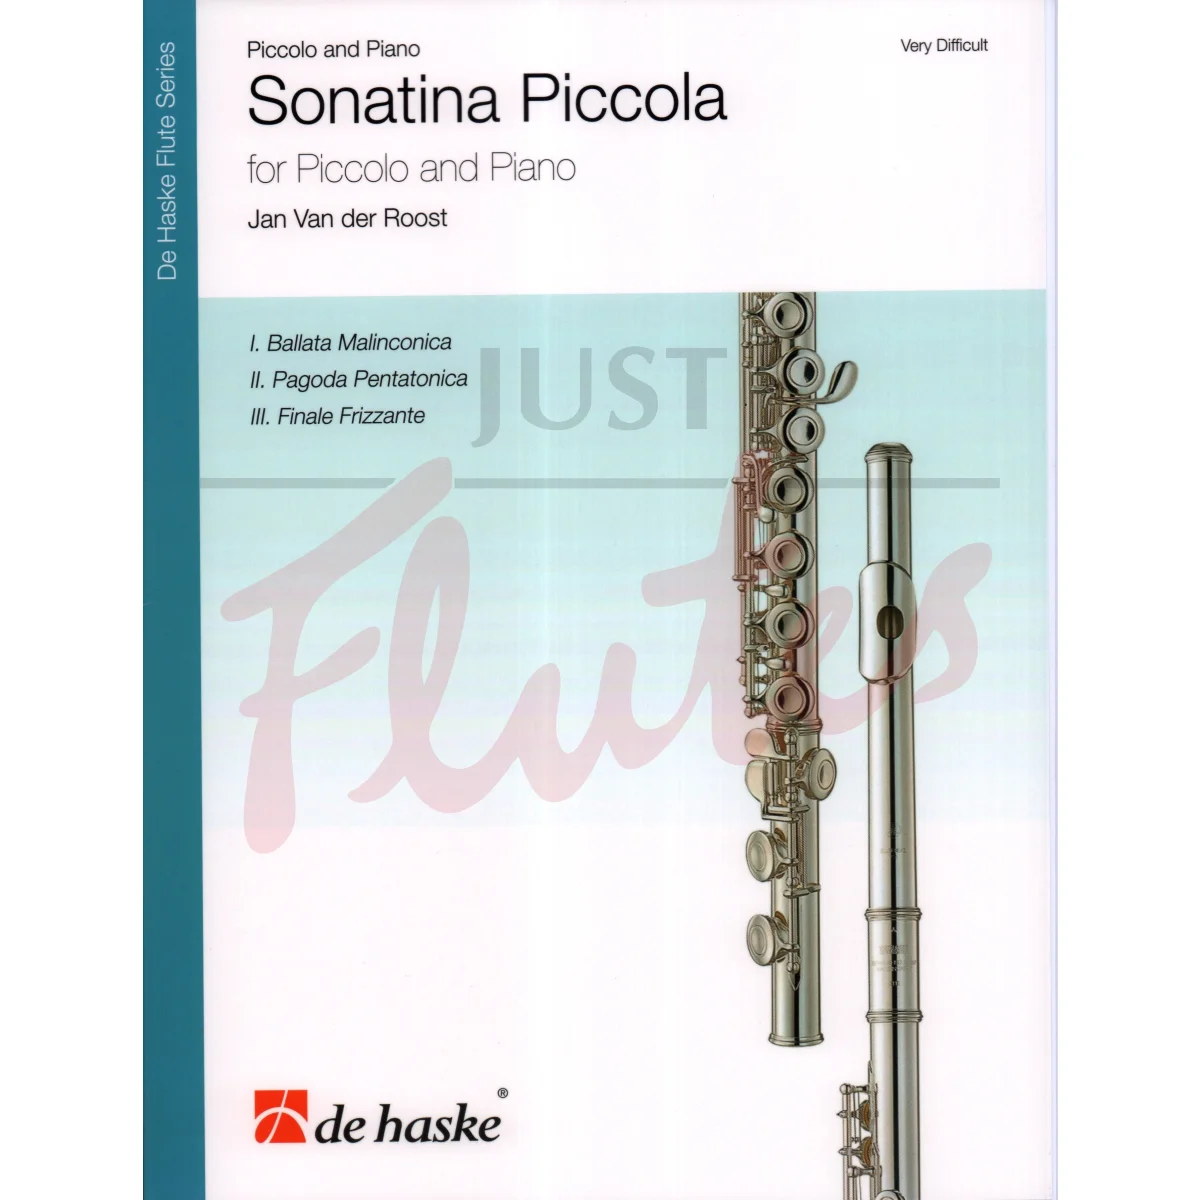 Sonatina Piccola for Piccolo and Piano